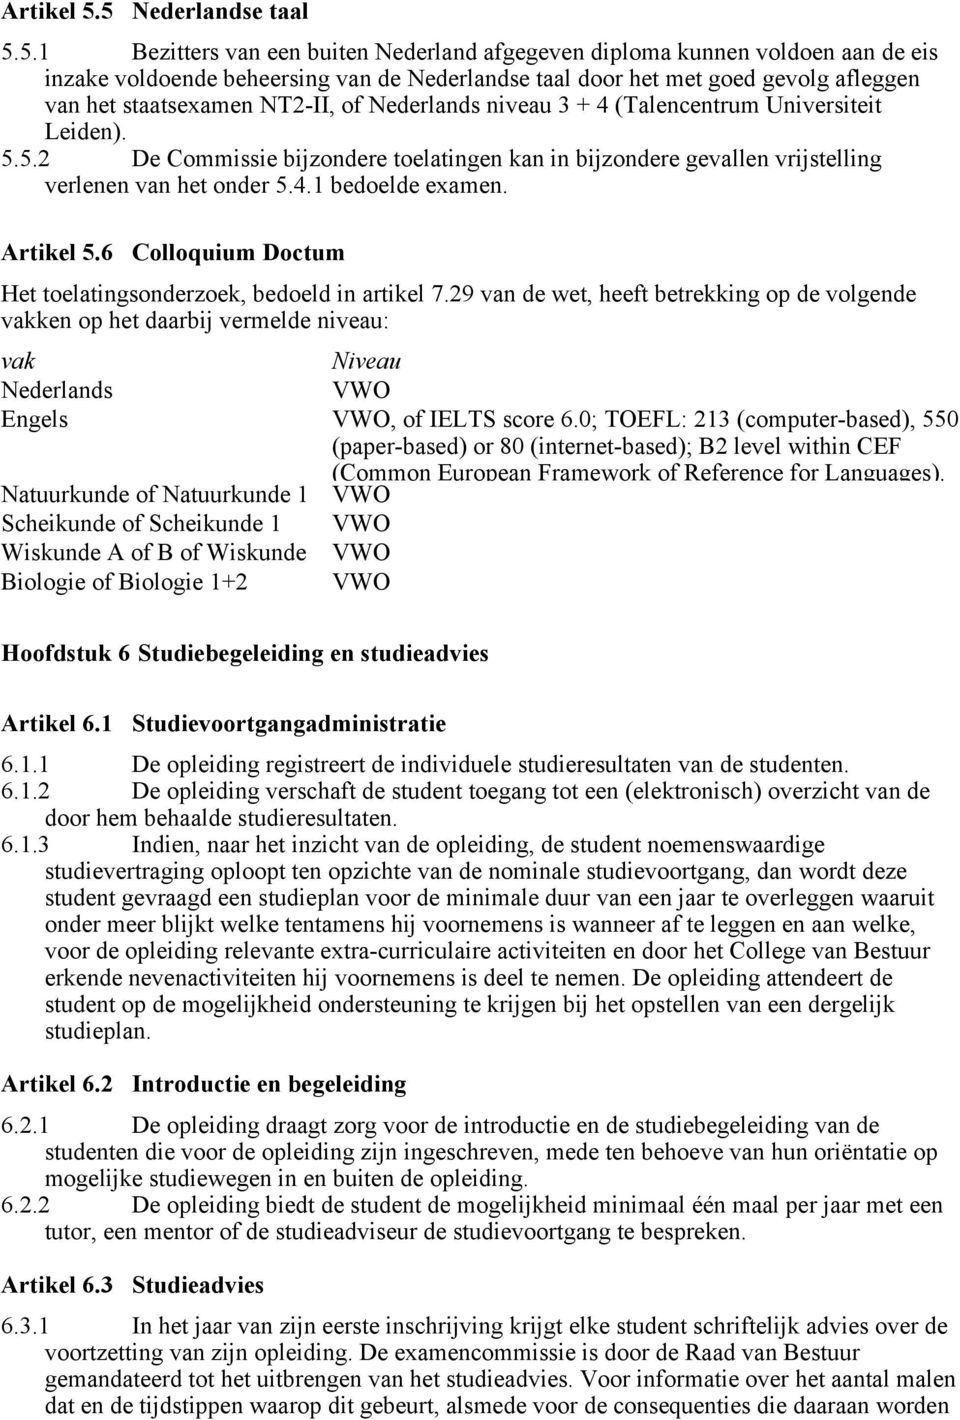 staatsexamen NT2-II, of Nederlands niveau 3 + 4 (Talencentrum Universiteit Leiden). 5.5.2 De Commissie bijzondere toelatingen kan in bijzondere gevallen vrijstelling verlenen van het onder 5.4.1 bedoelde examen.